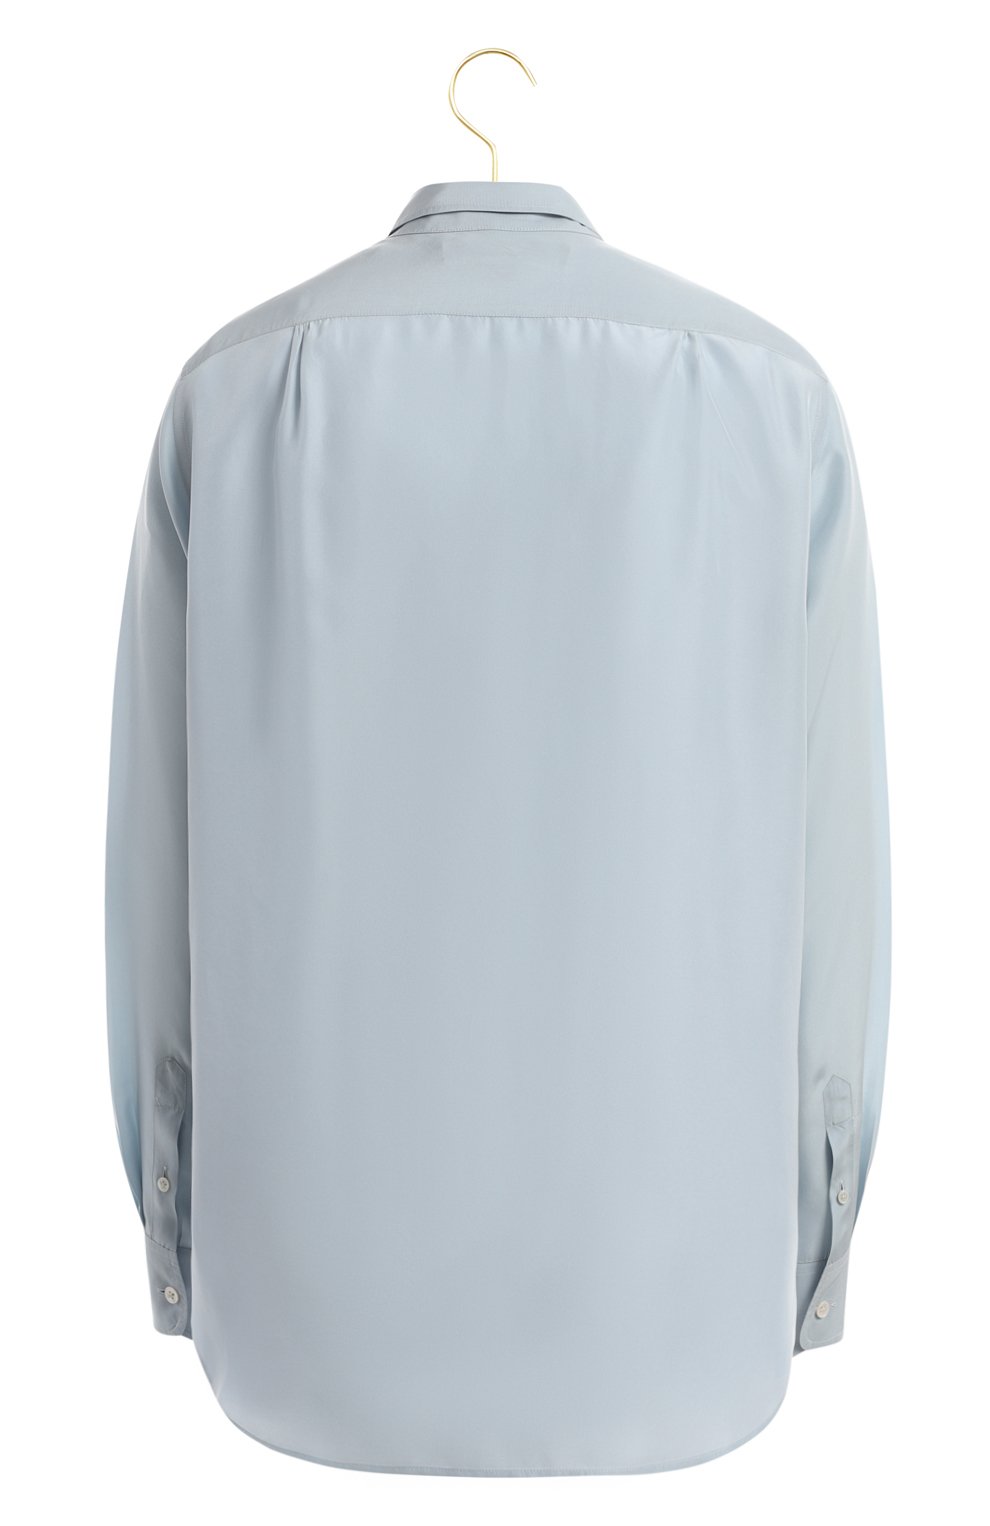 Шелковая рубашка | Ralph Lauren | Голубой - 2